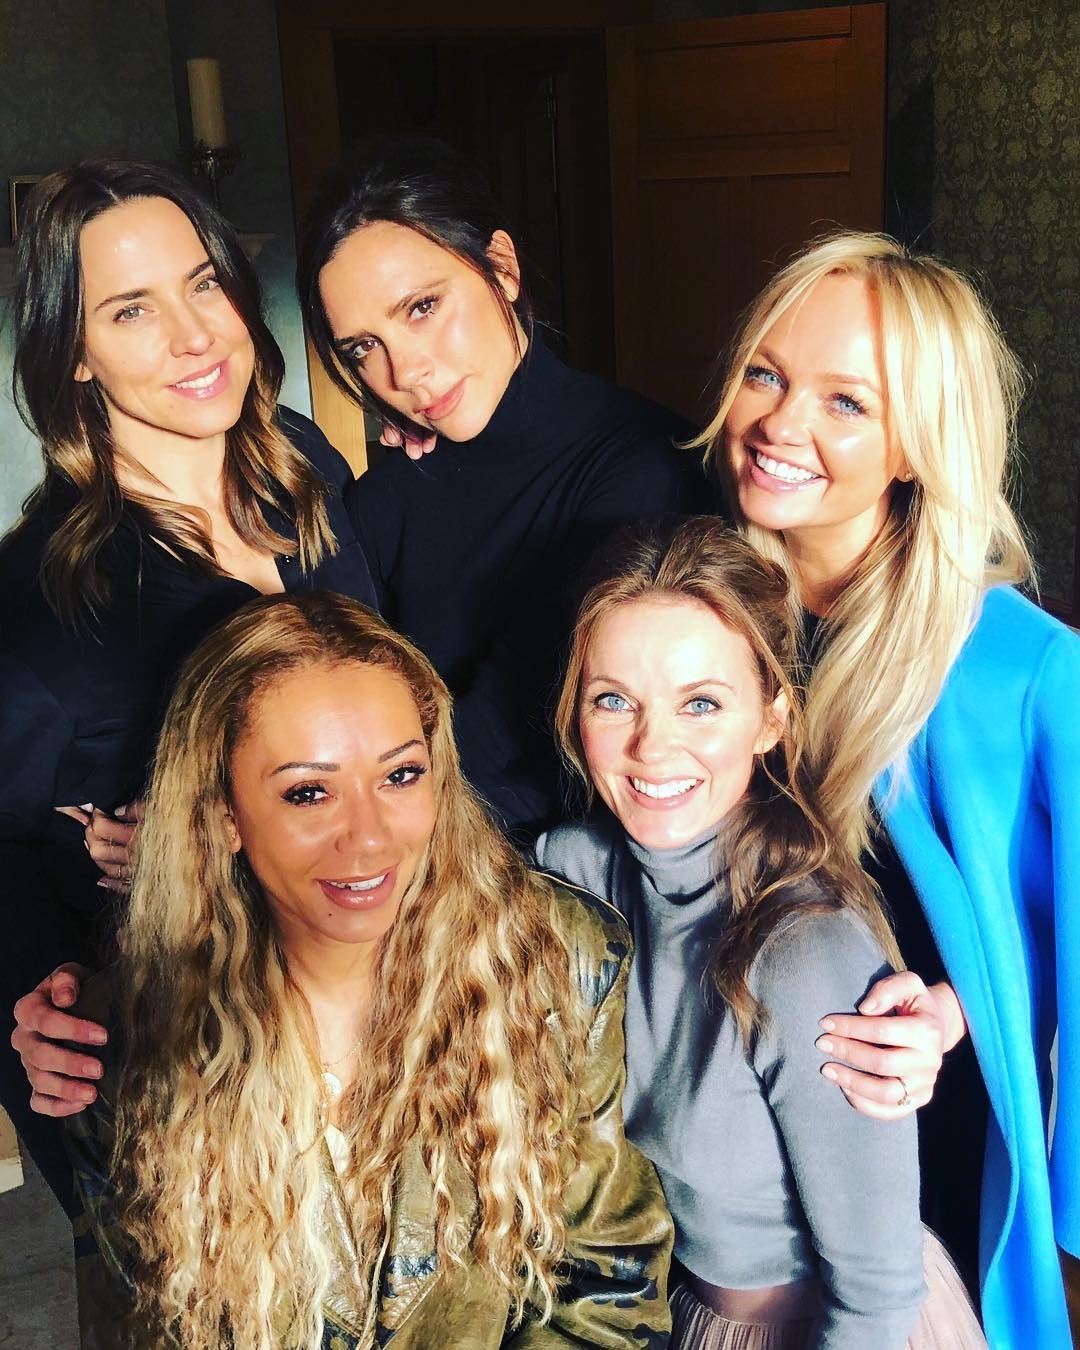 Spice Girls reunidas para novos projetos quebrou a internet (Foto: Reprodução/Instagram)